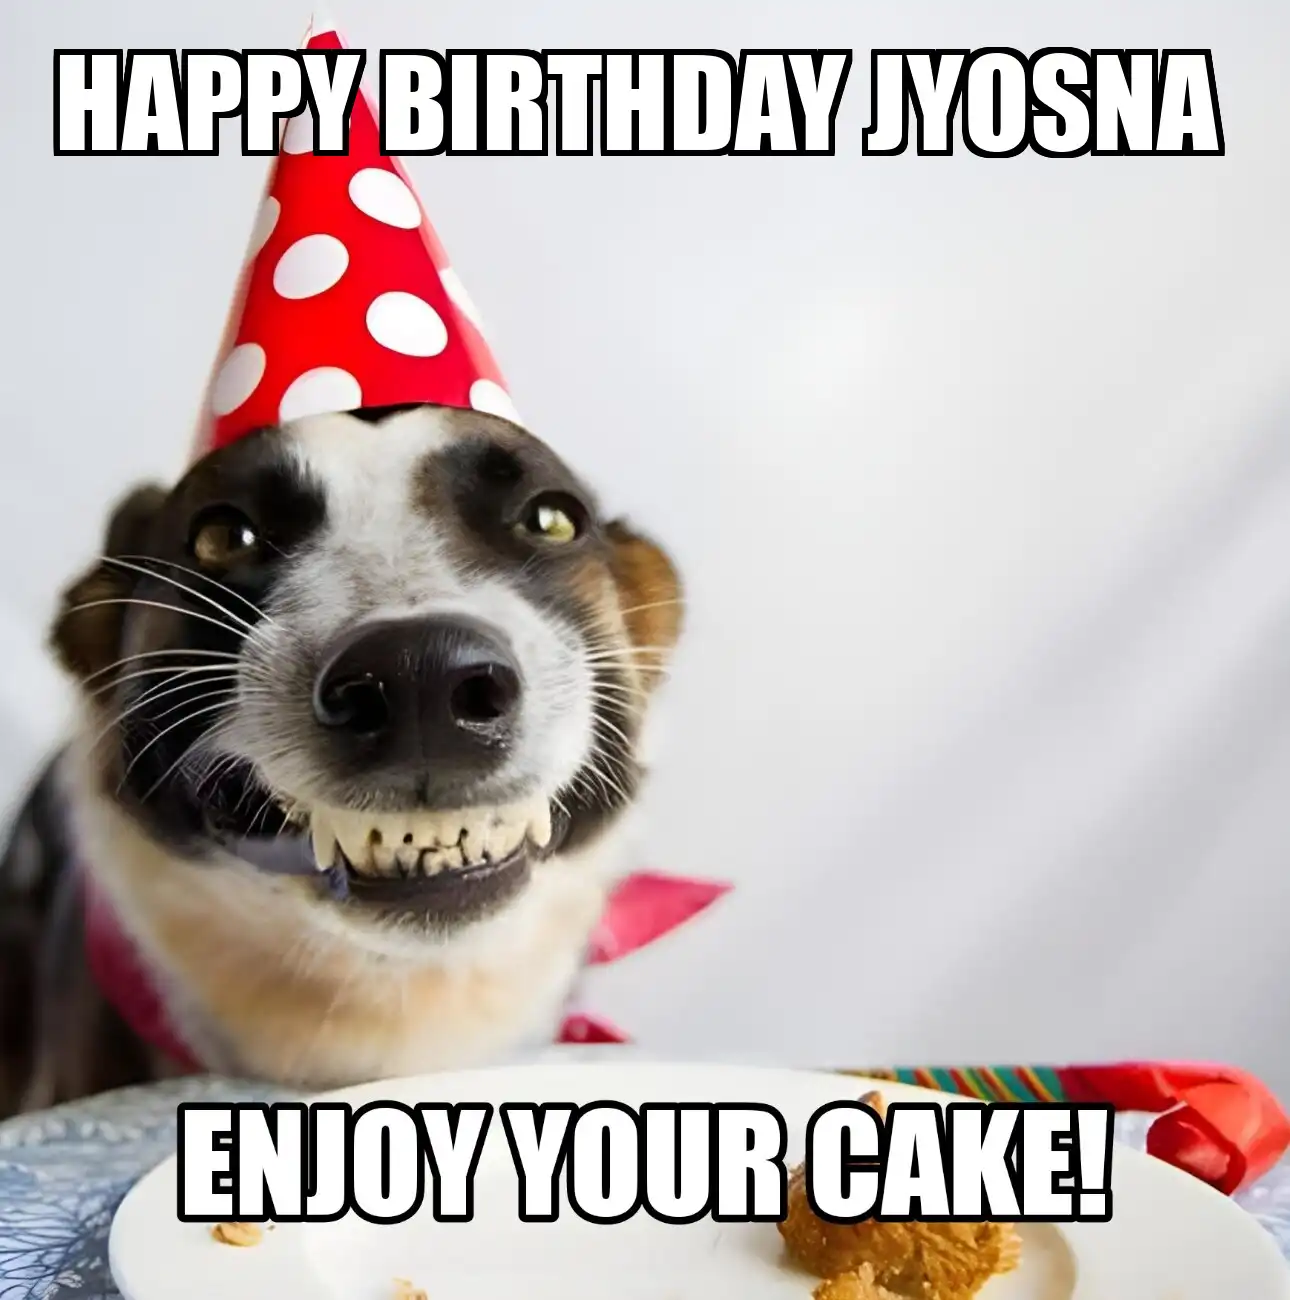 Happy Birthday Jyosna Enjoy Your Cake Dog Meme